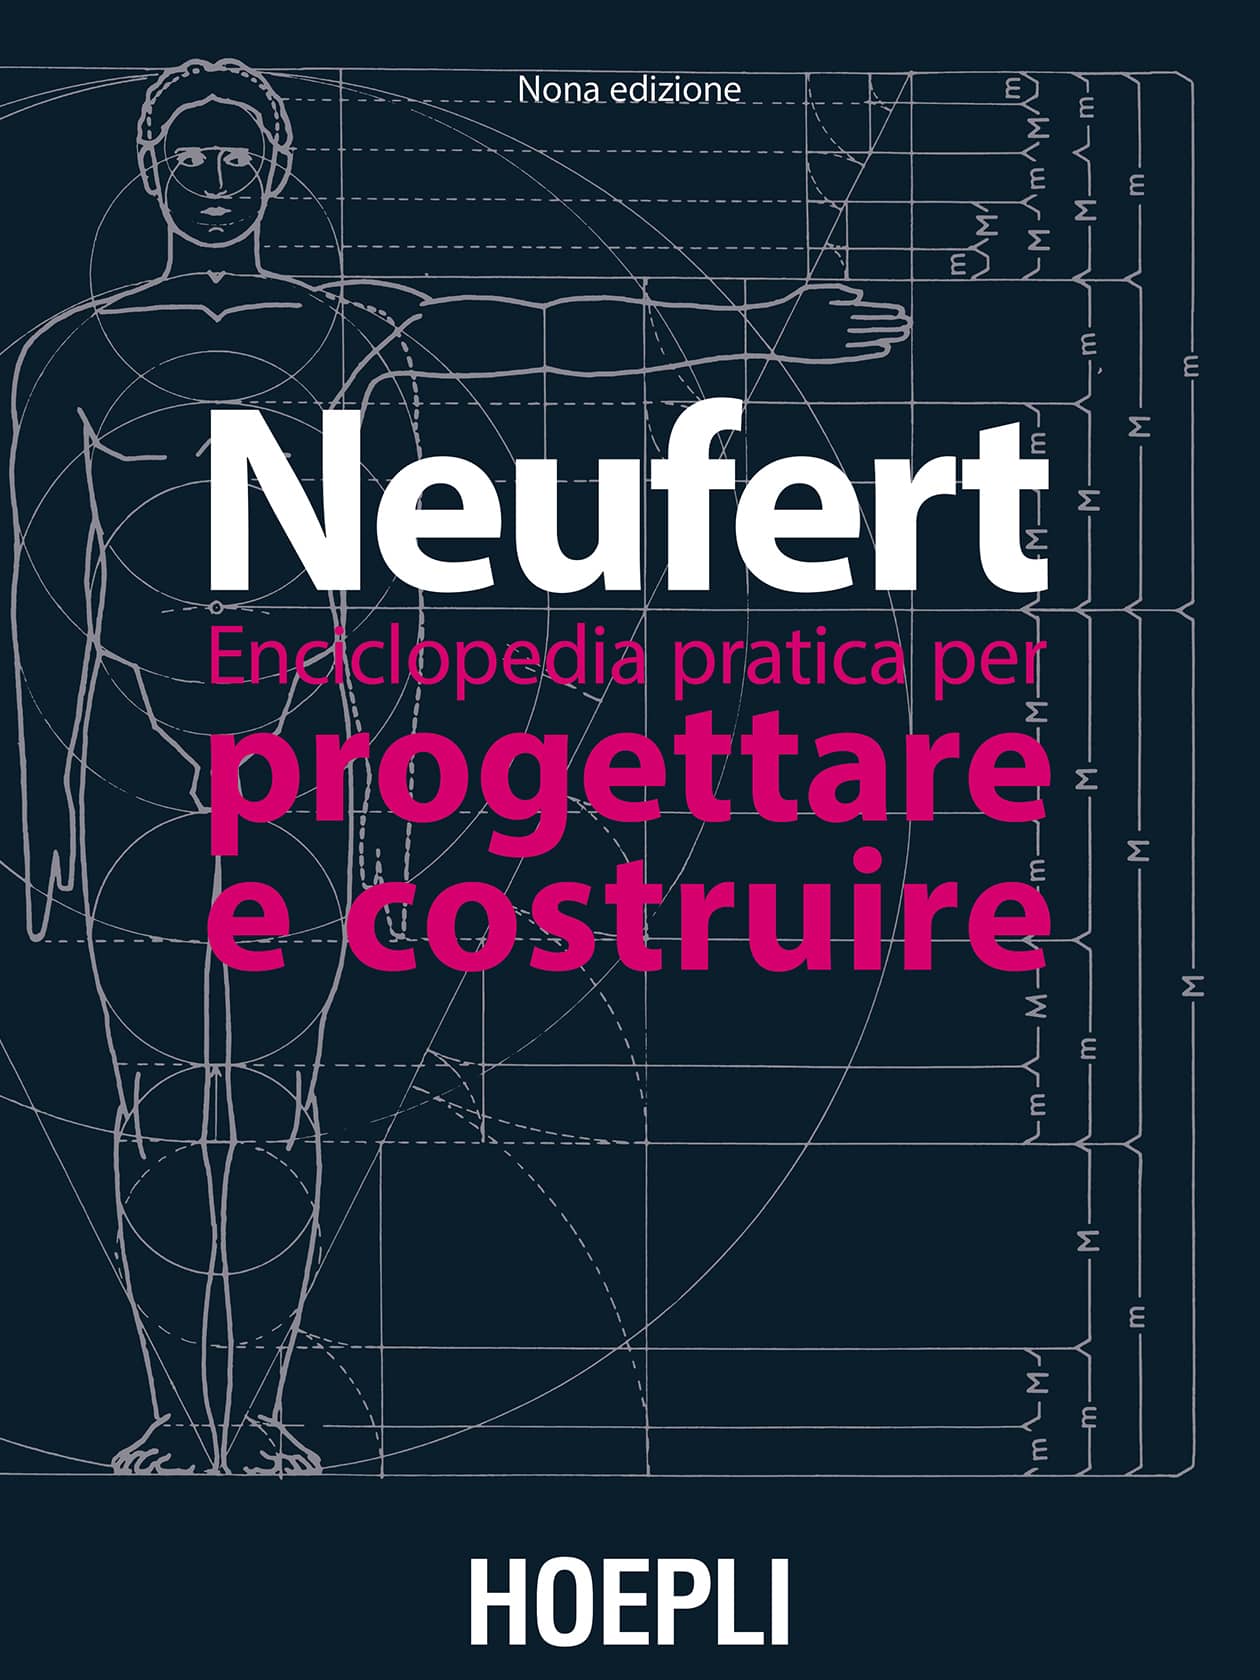 Italian edition of the Bauentwurfslehre of Ernst Neufert